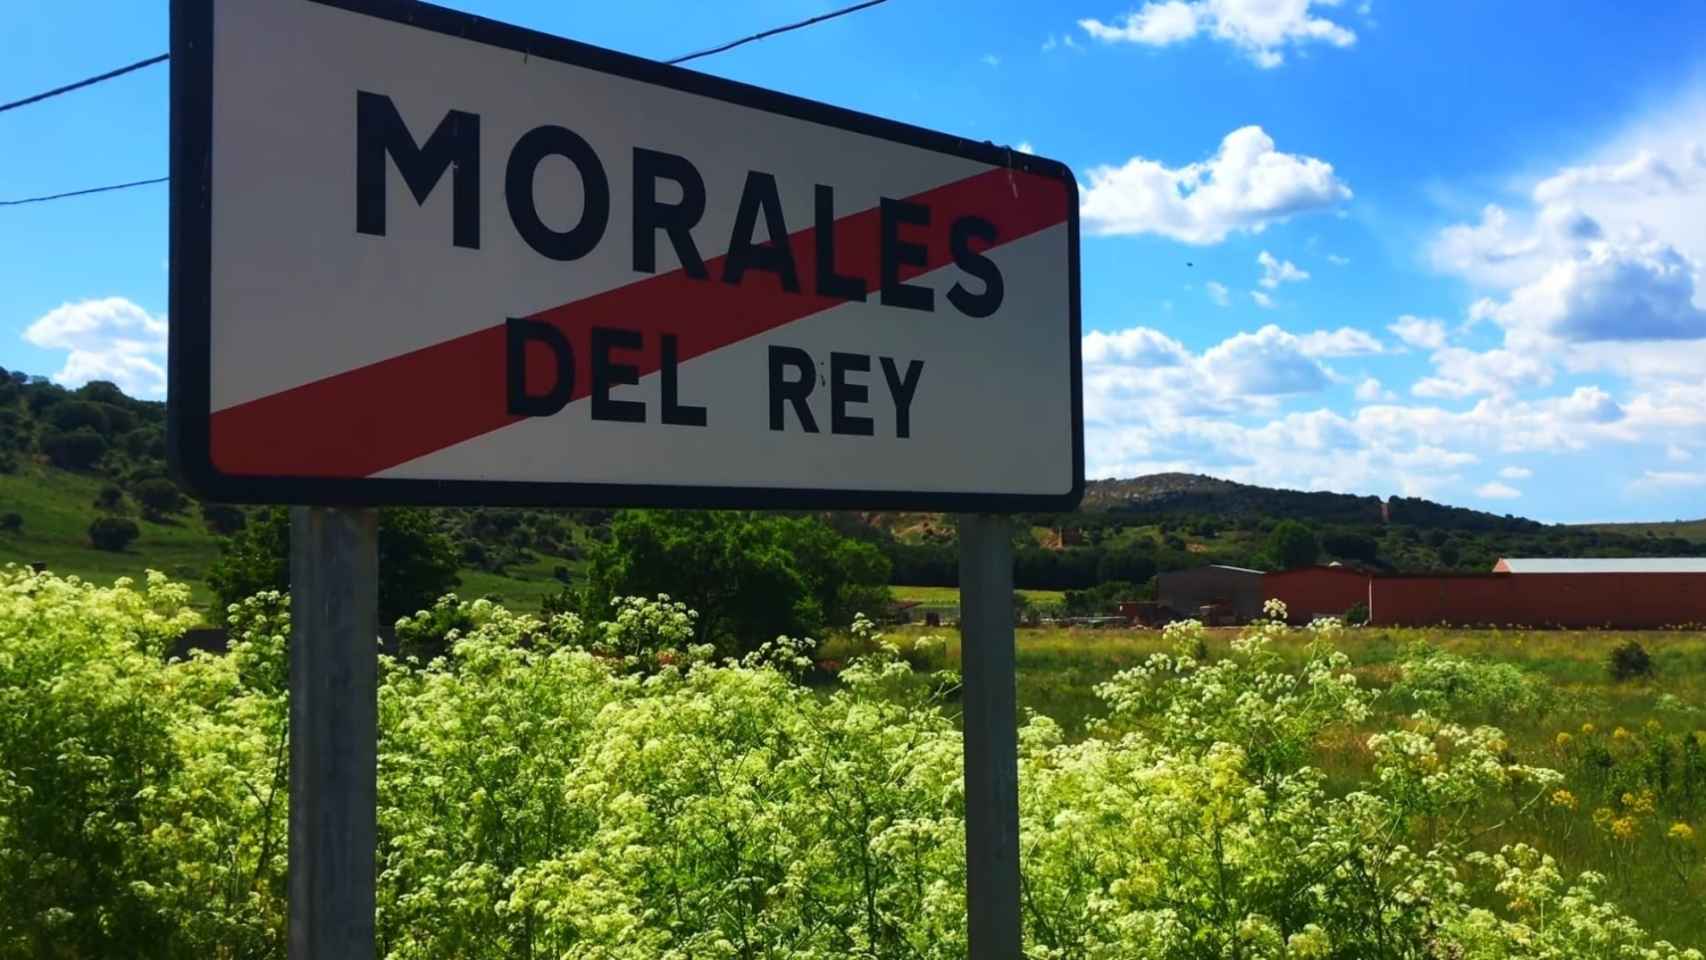 Morales de Rey